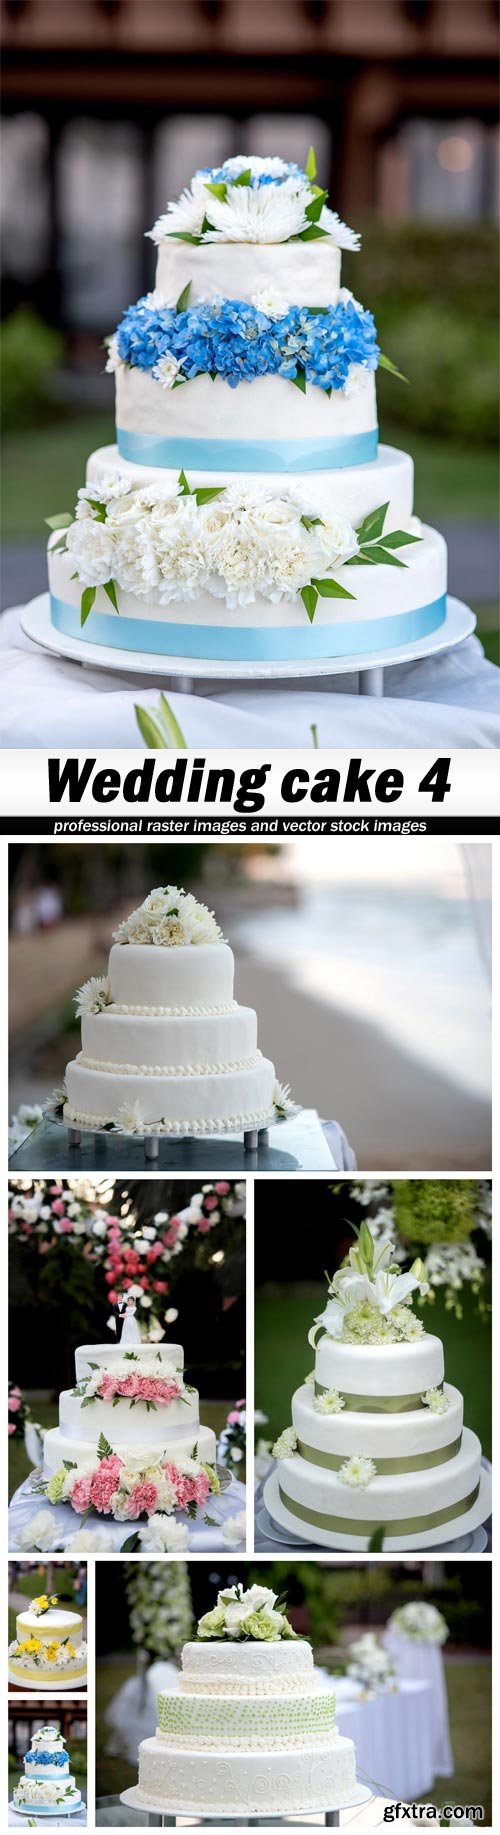 Wedding cake 4 - 6 UHQ JPEG